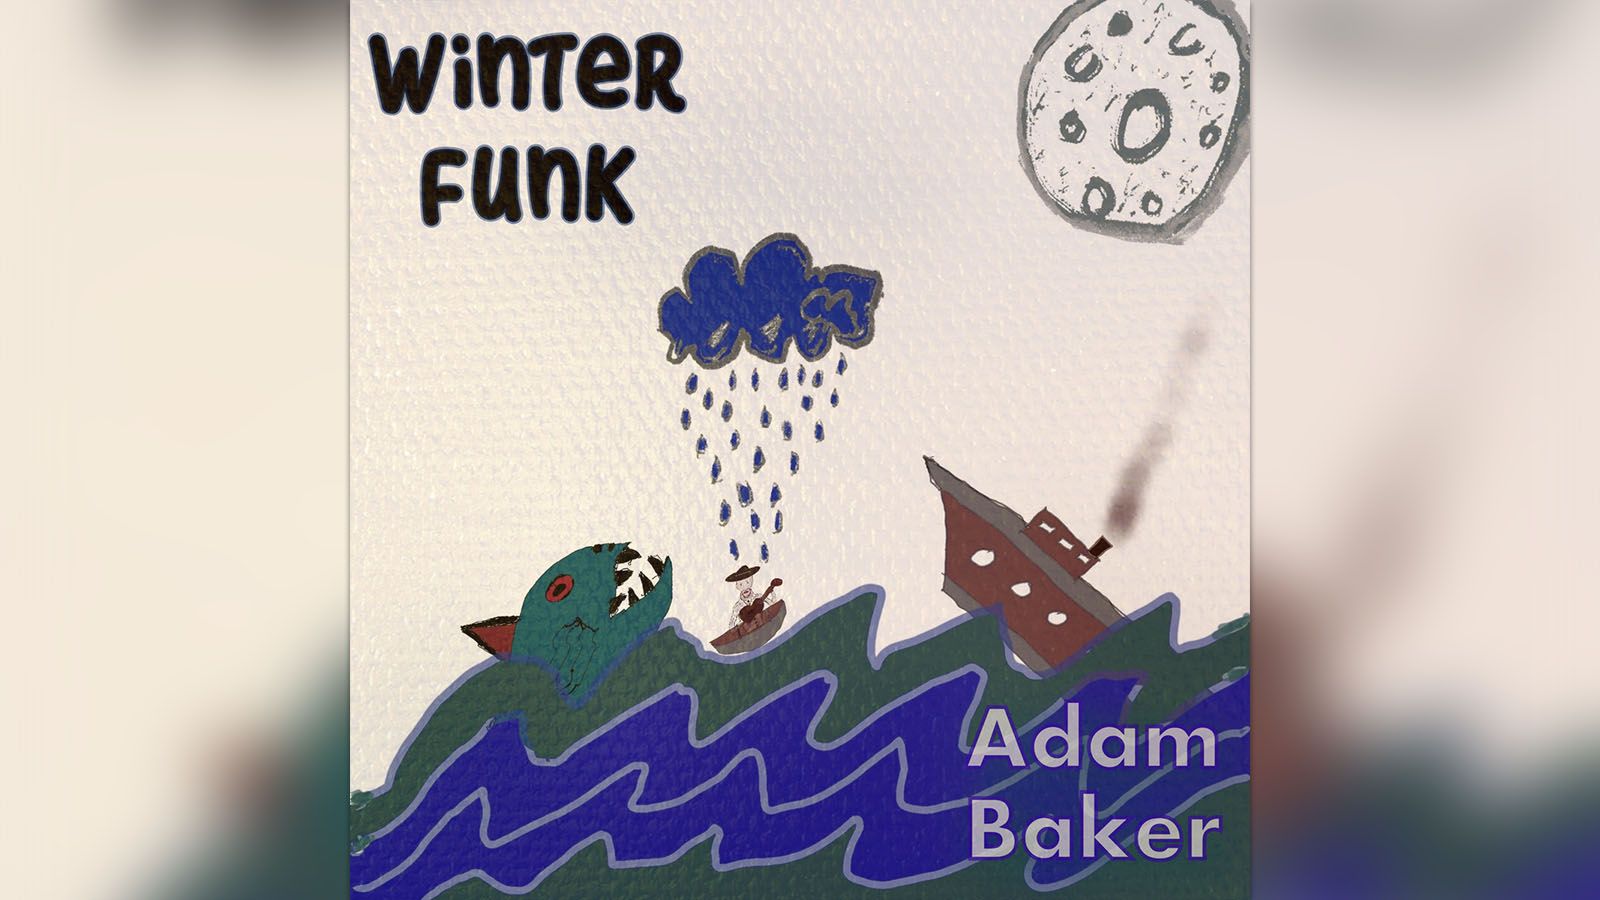 Adam Baker released "Winter Funk" on March 10.